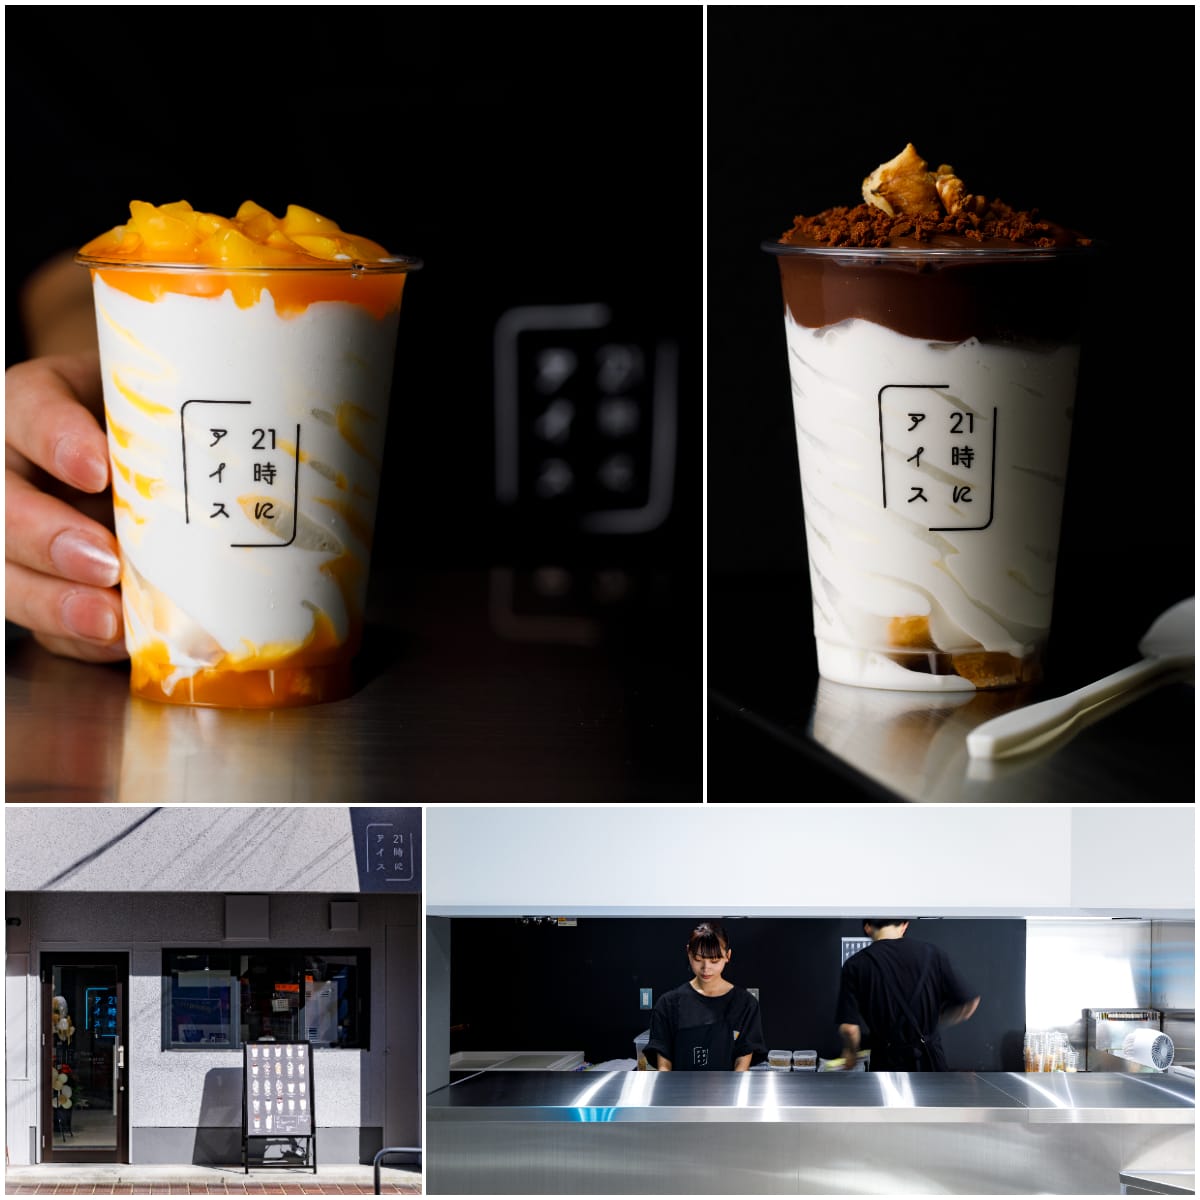 締めに食べたくなると話題のアイス専門店『21時にアイス』が石川県初上陸。